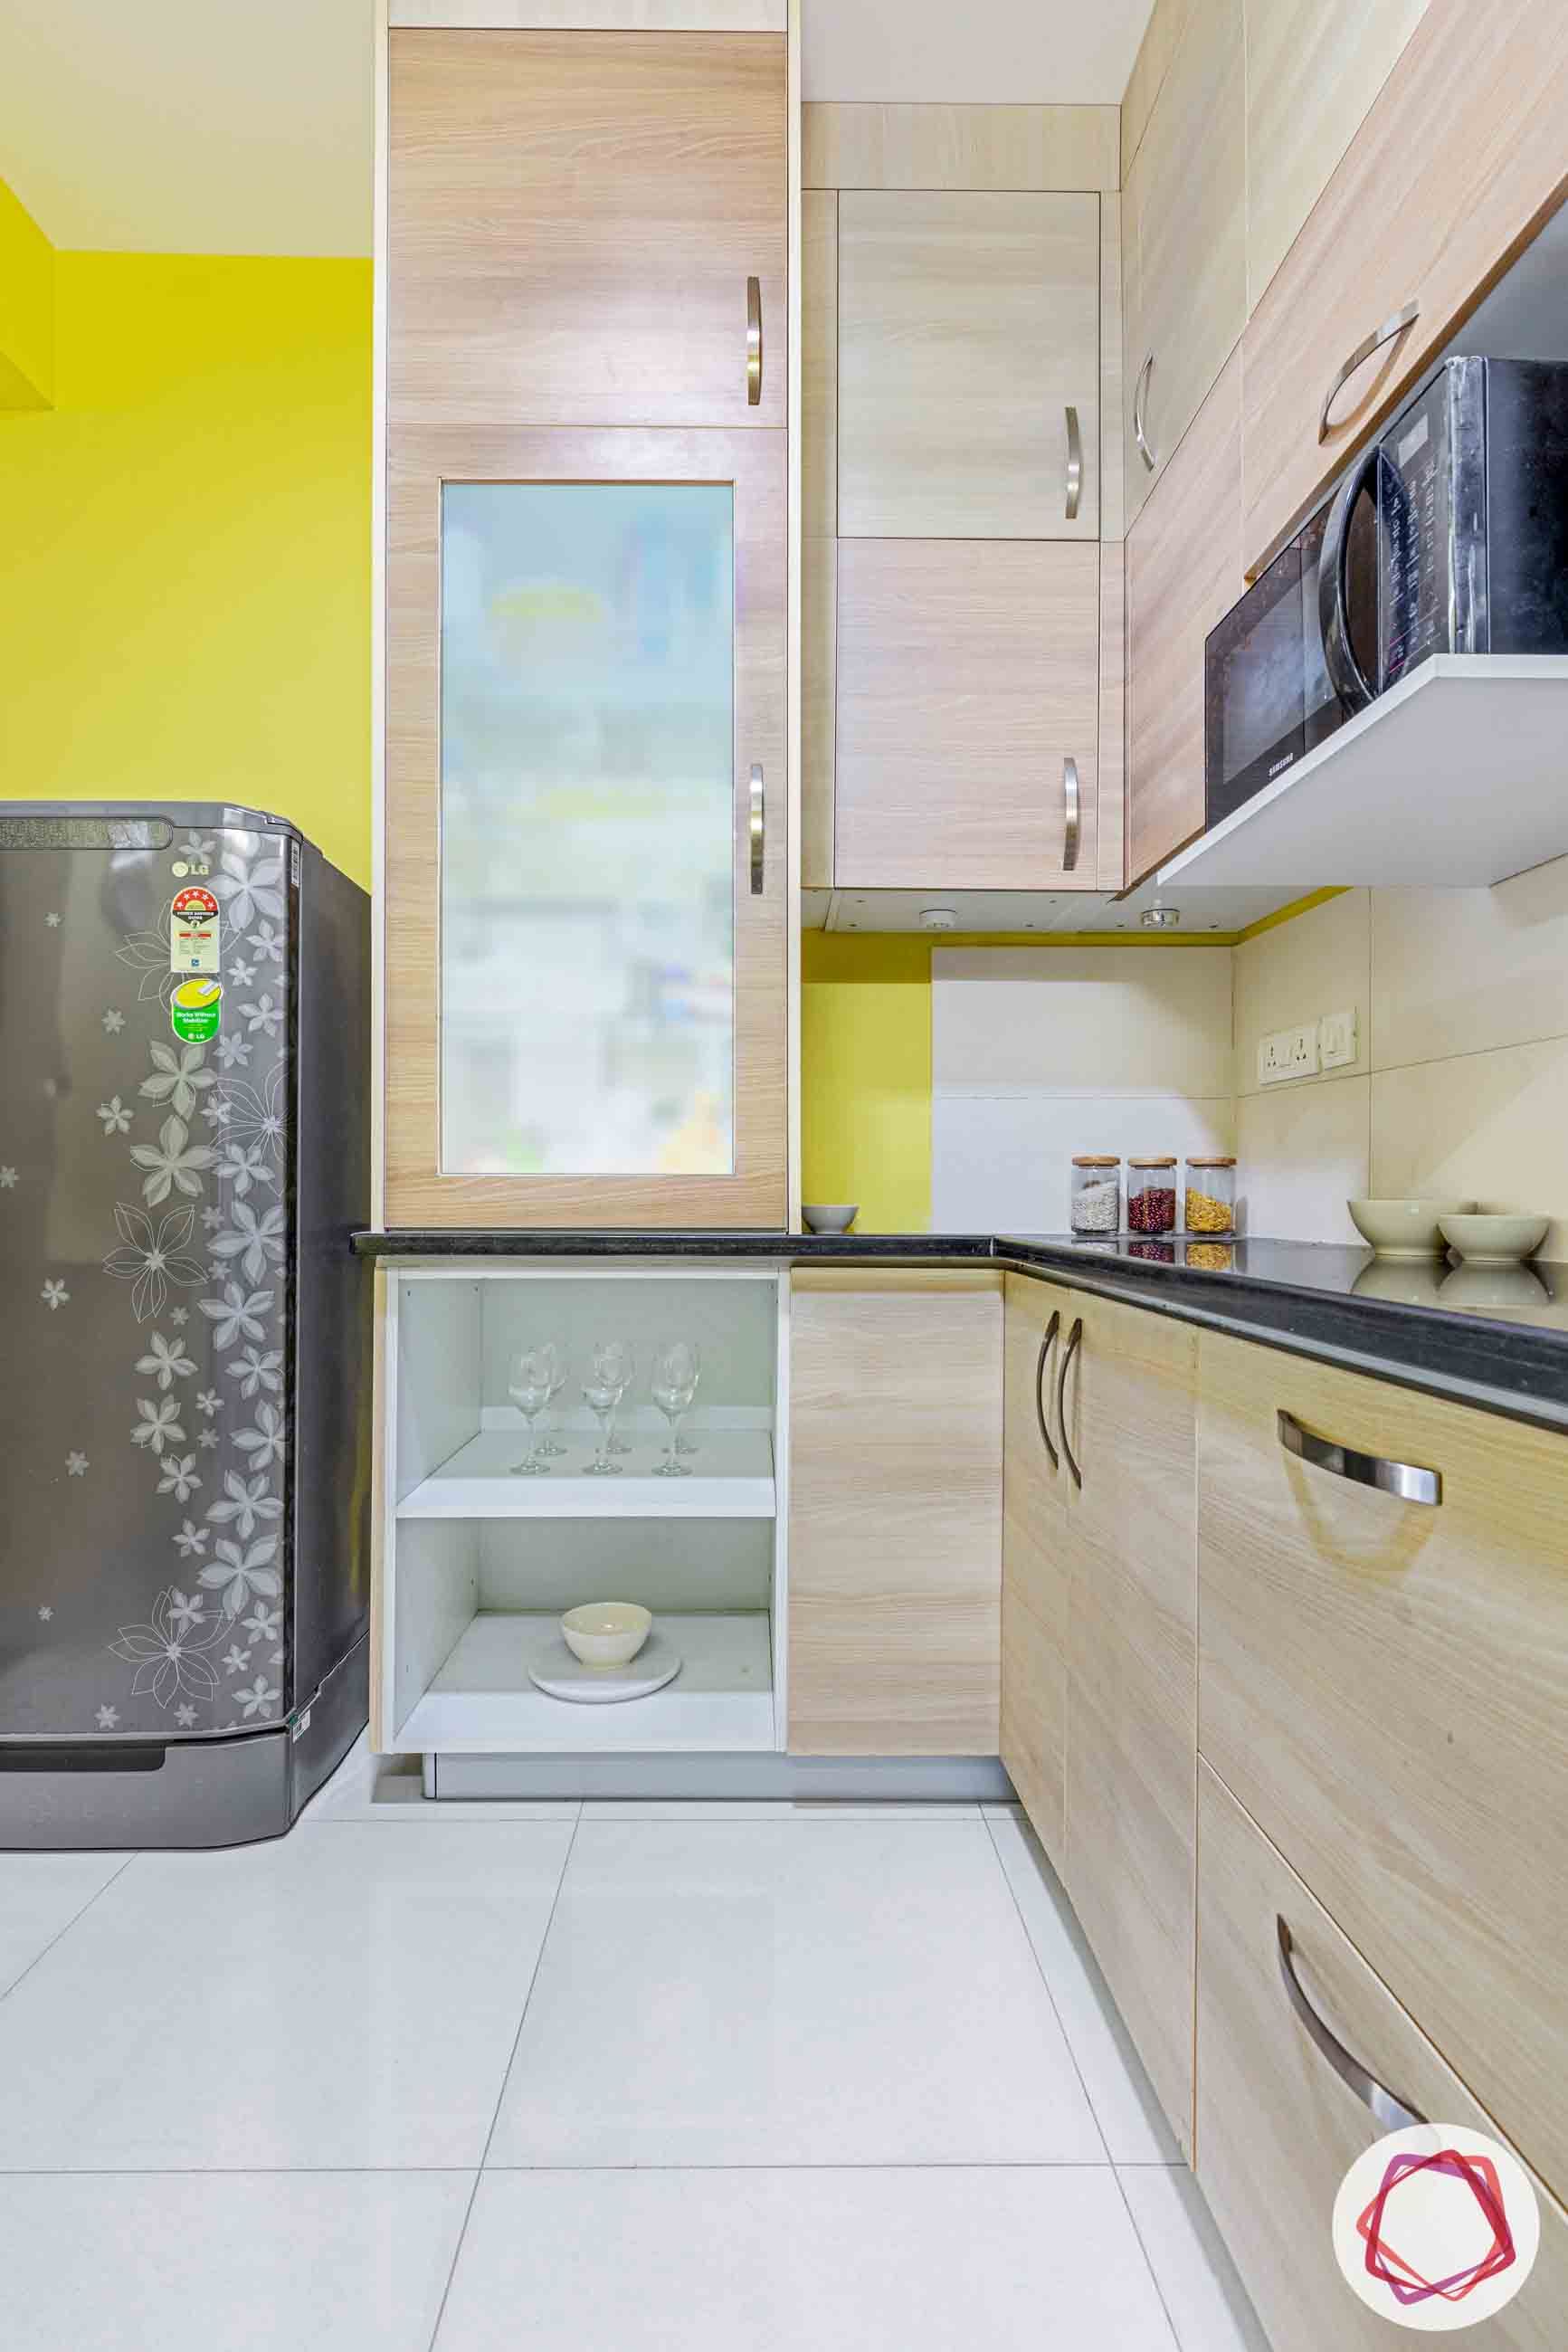  loft designs for kitchen-pantry unit designs